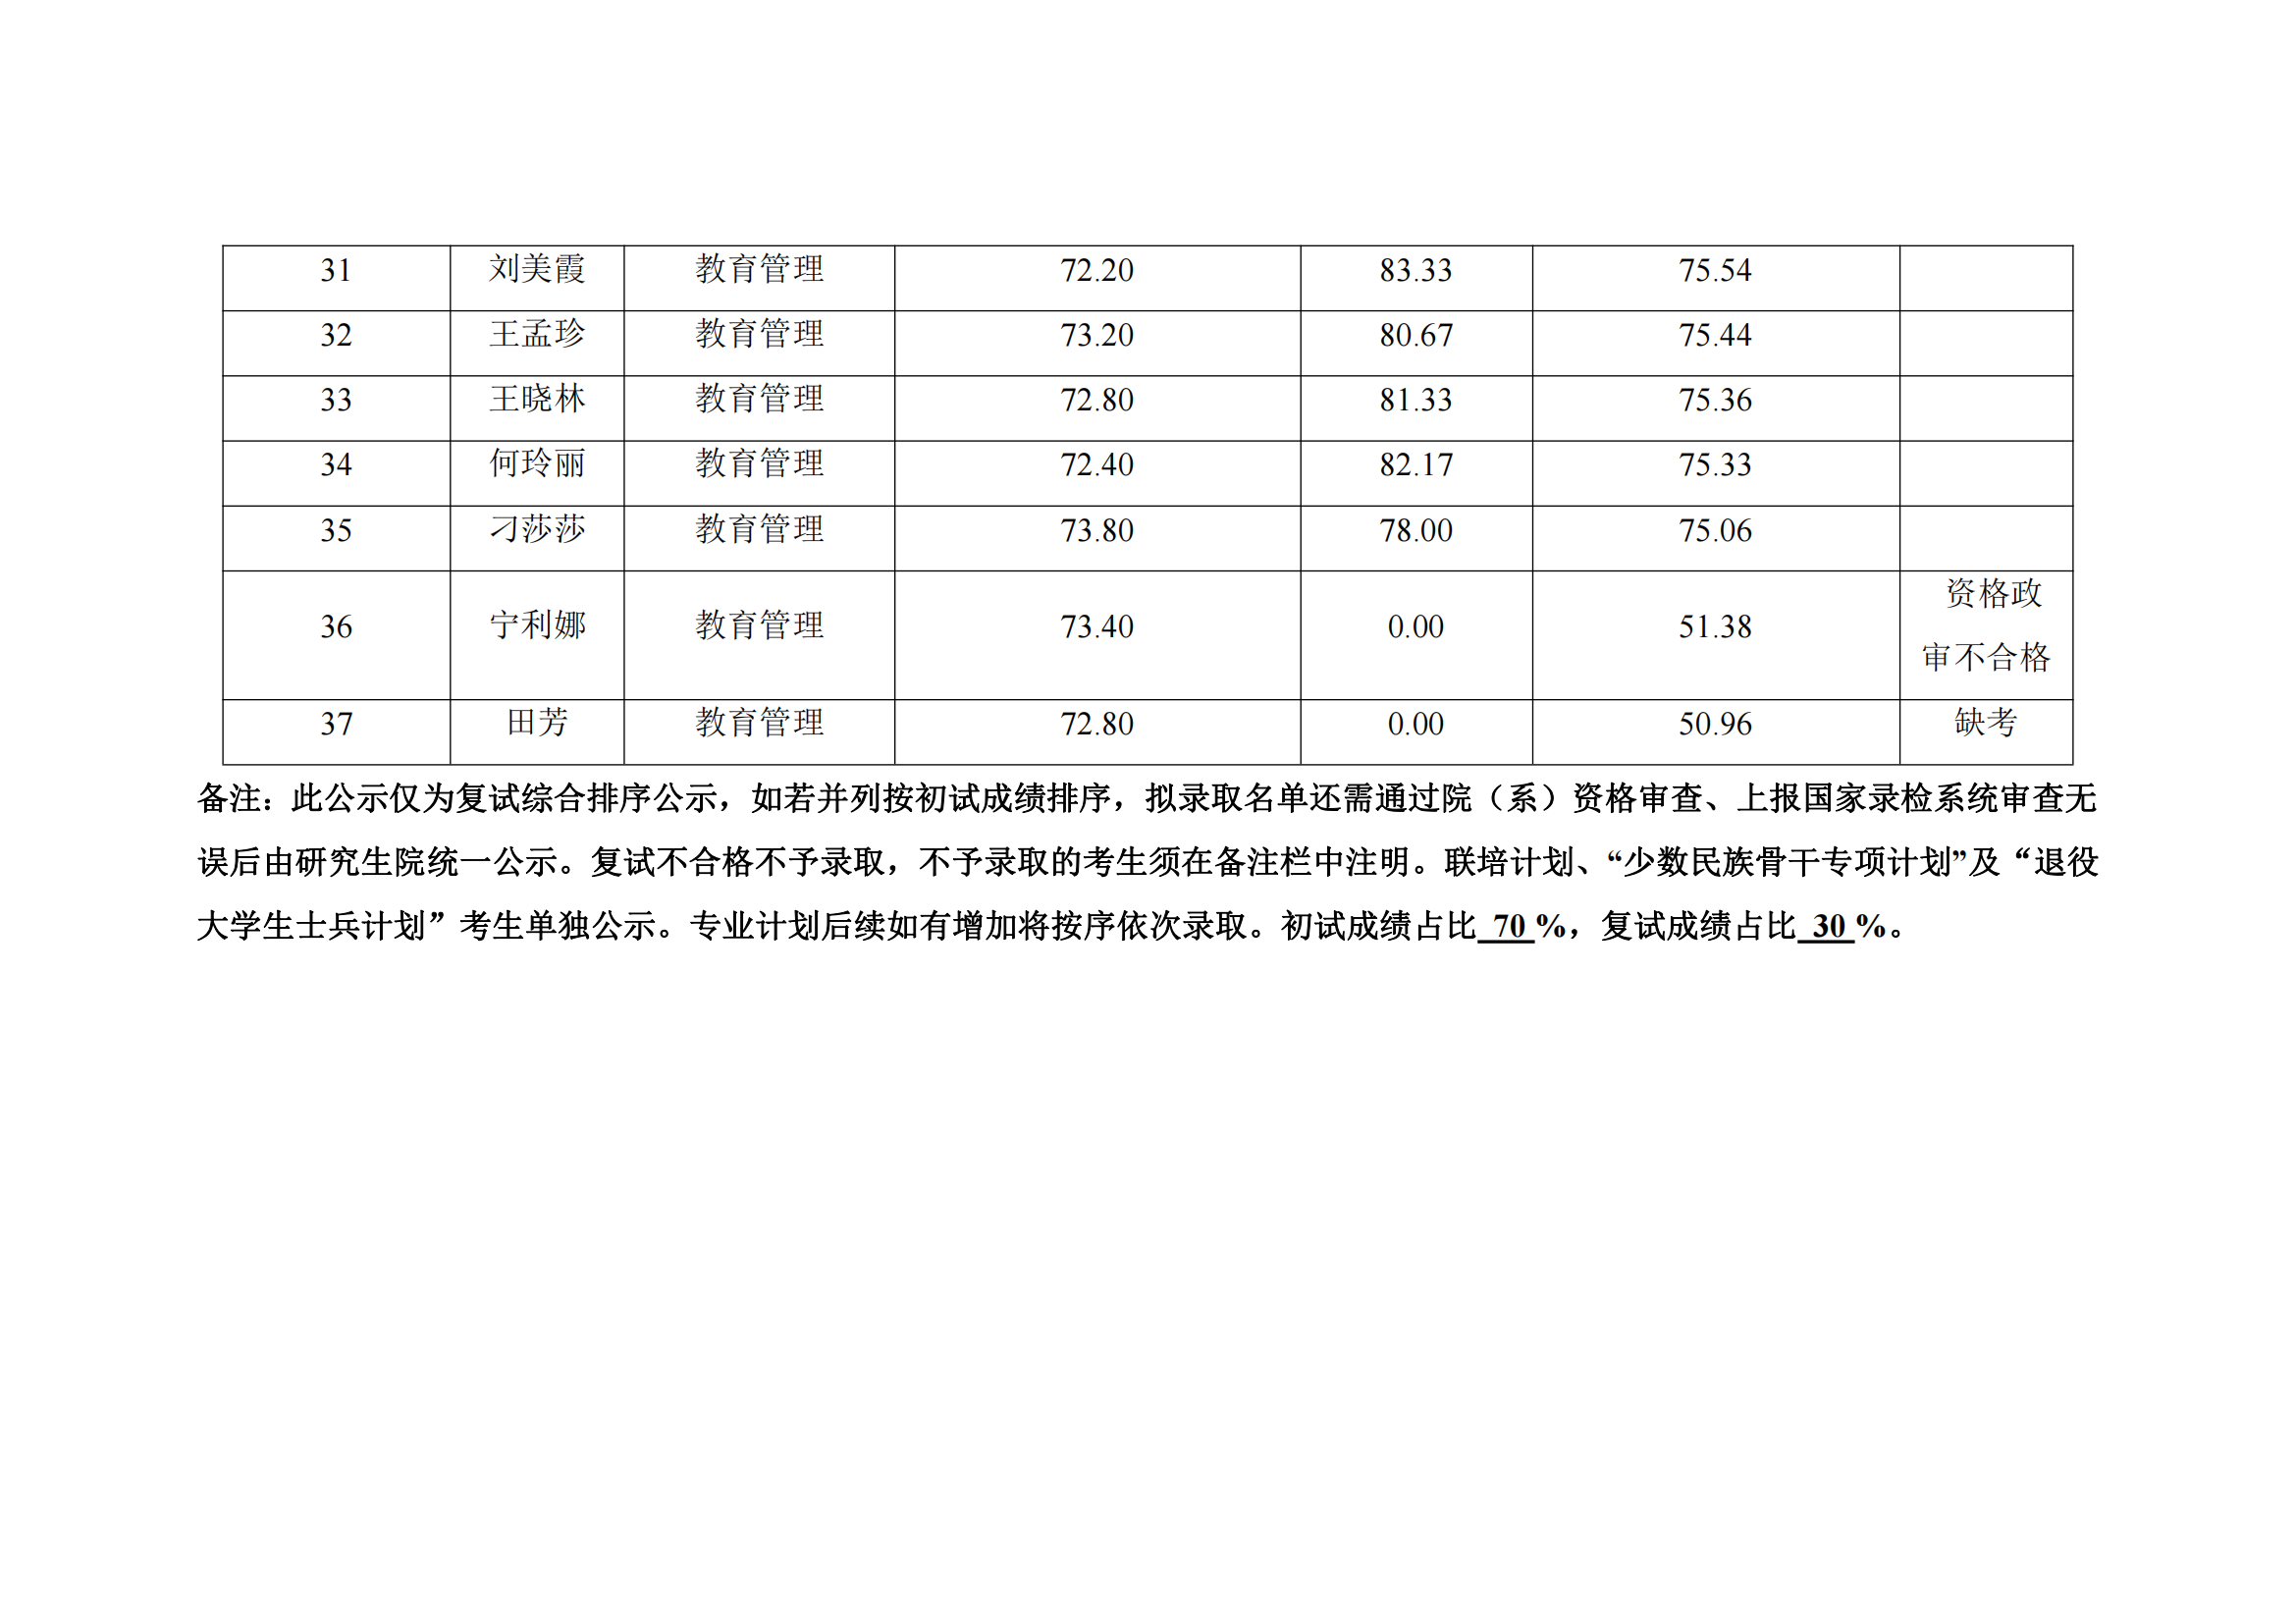 郑州大学教育学院2022年硕士研究生复试结果综合排序公示表_15.png